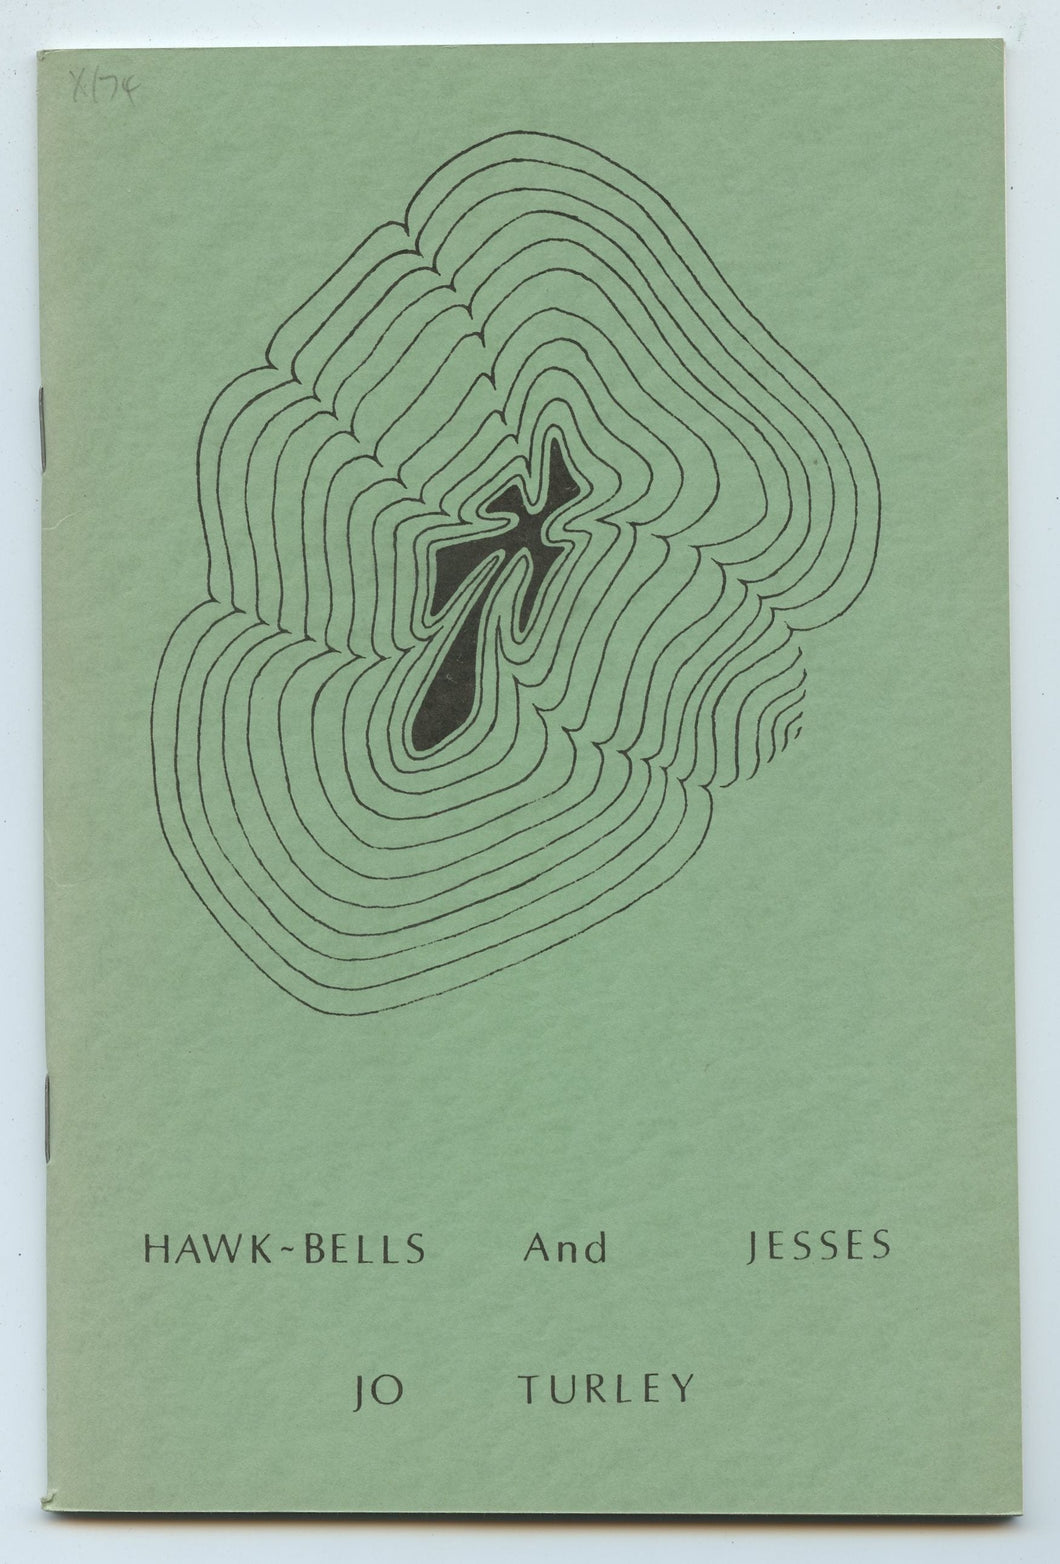 Hawk-Bells and Jesses